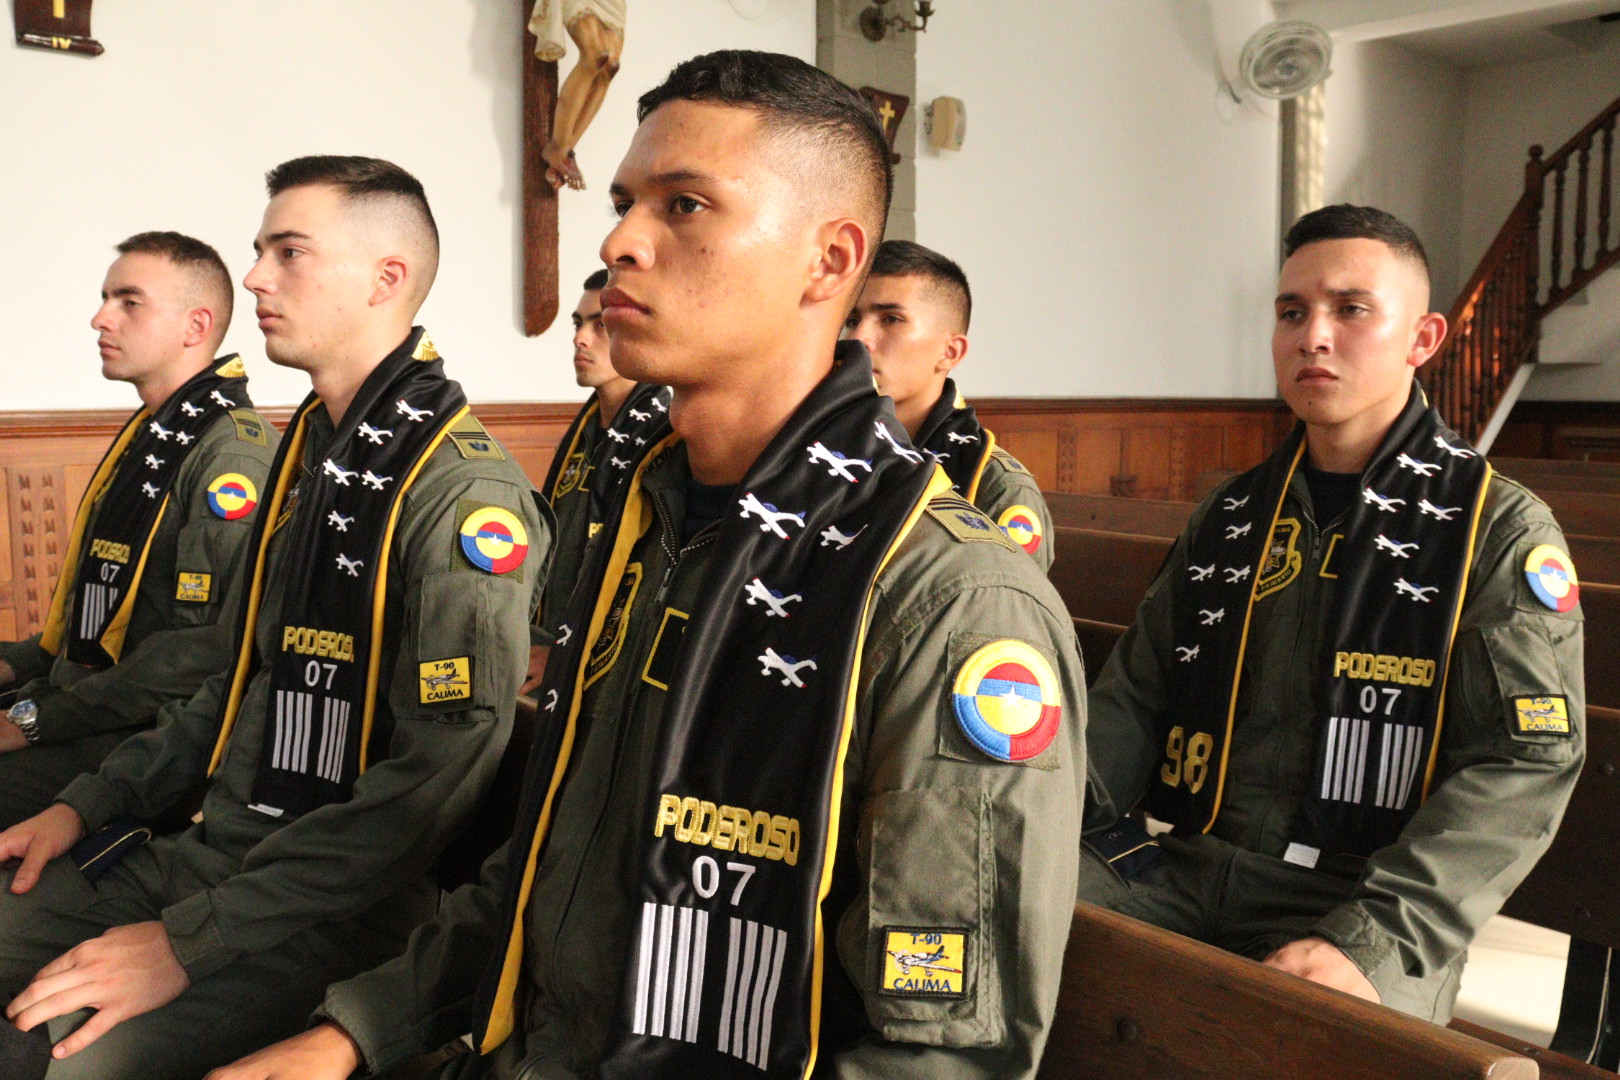 Doce cadetes de vuelo recibieron la bendición e imposición de bufandas del equipo T-90 Calima